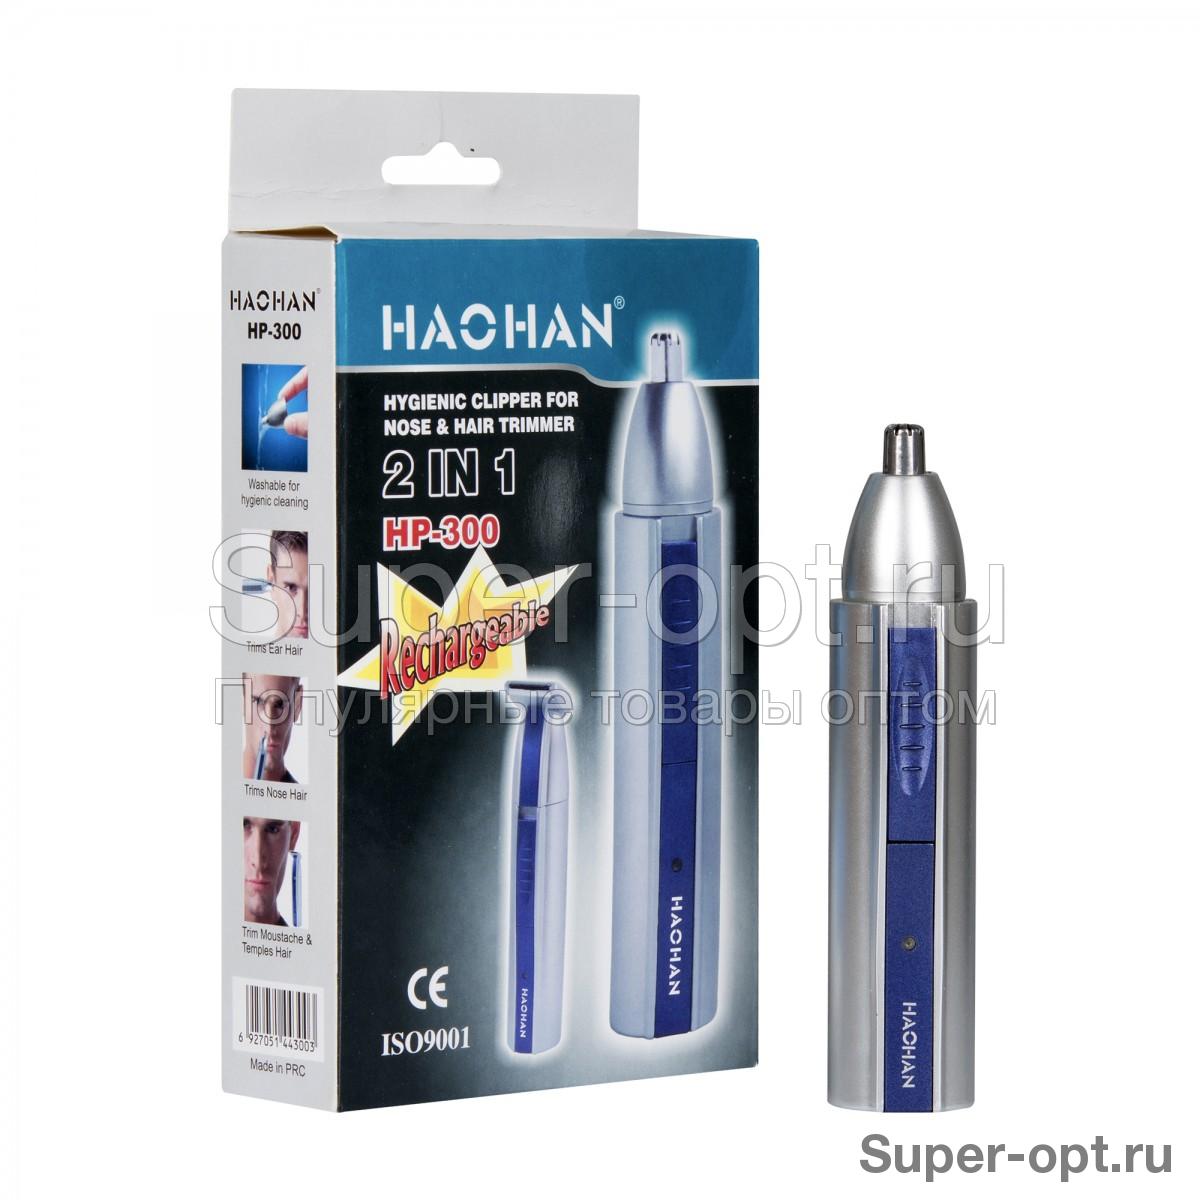 Гигиенический триммер Haohan HP-300